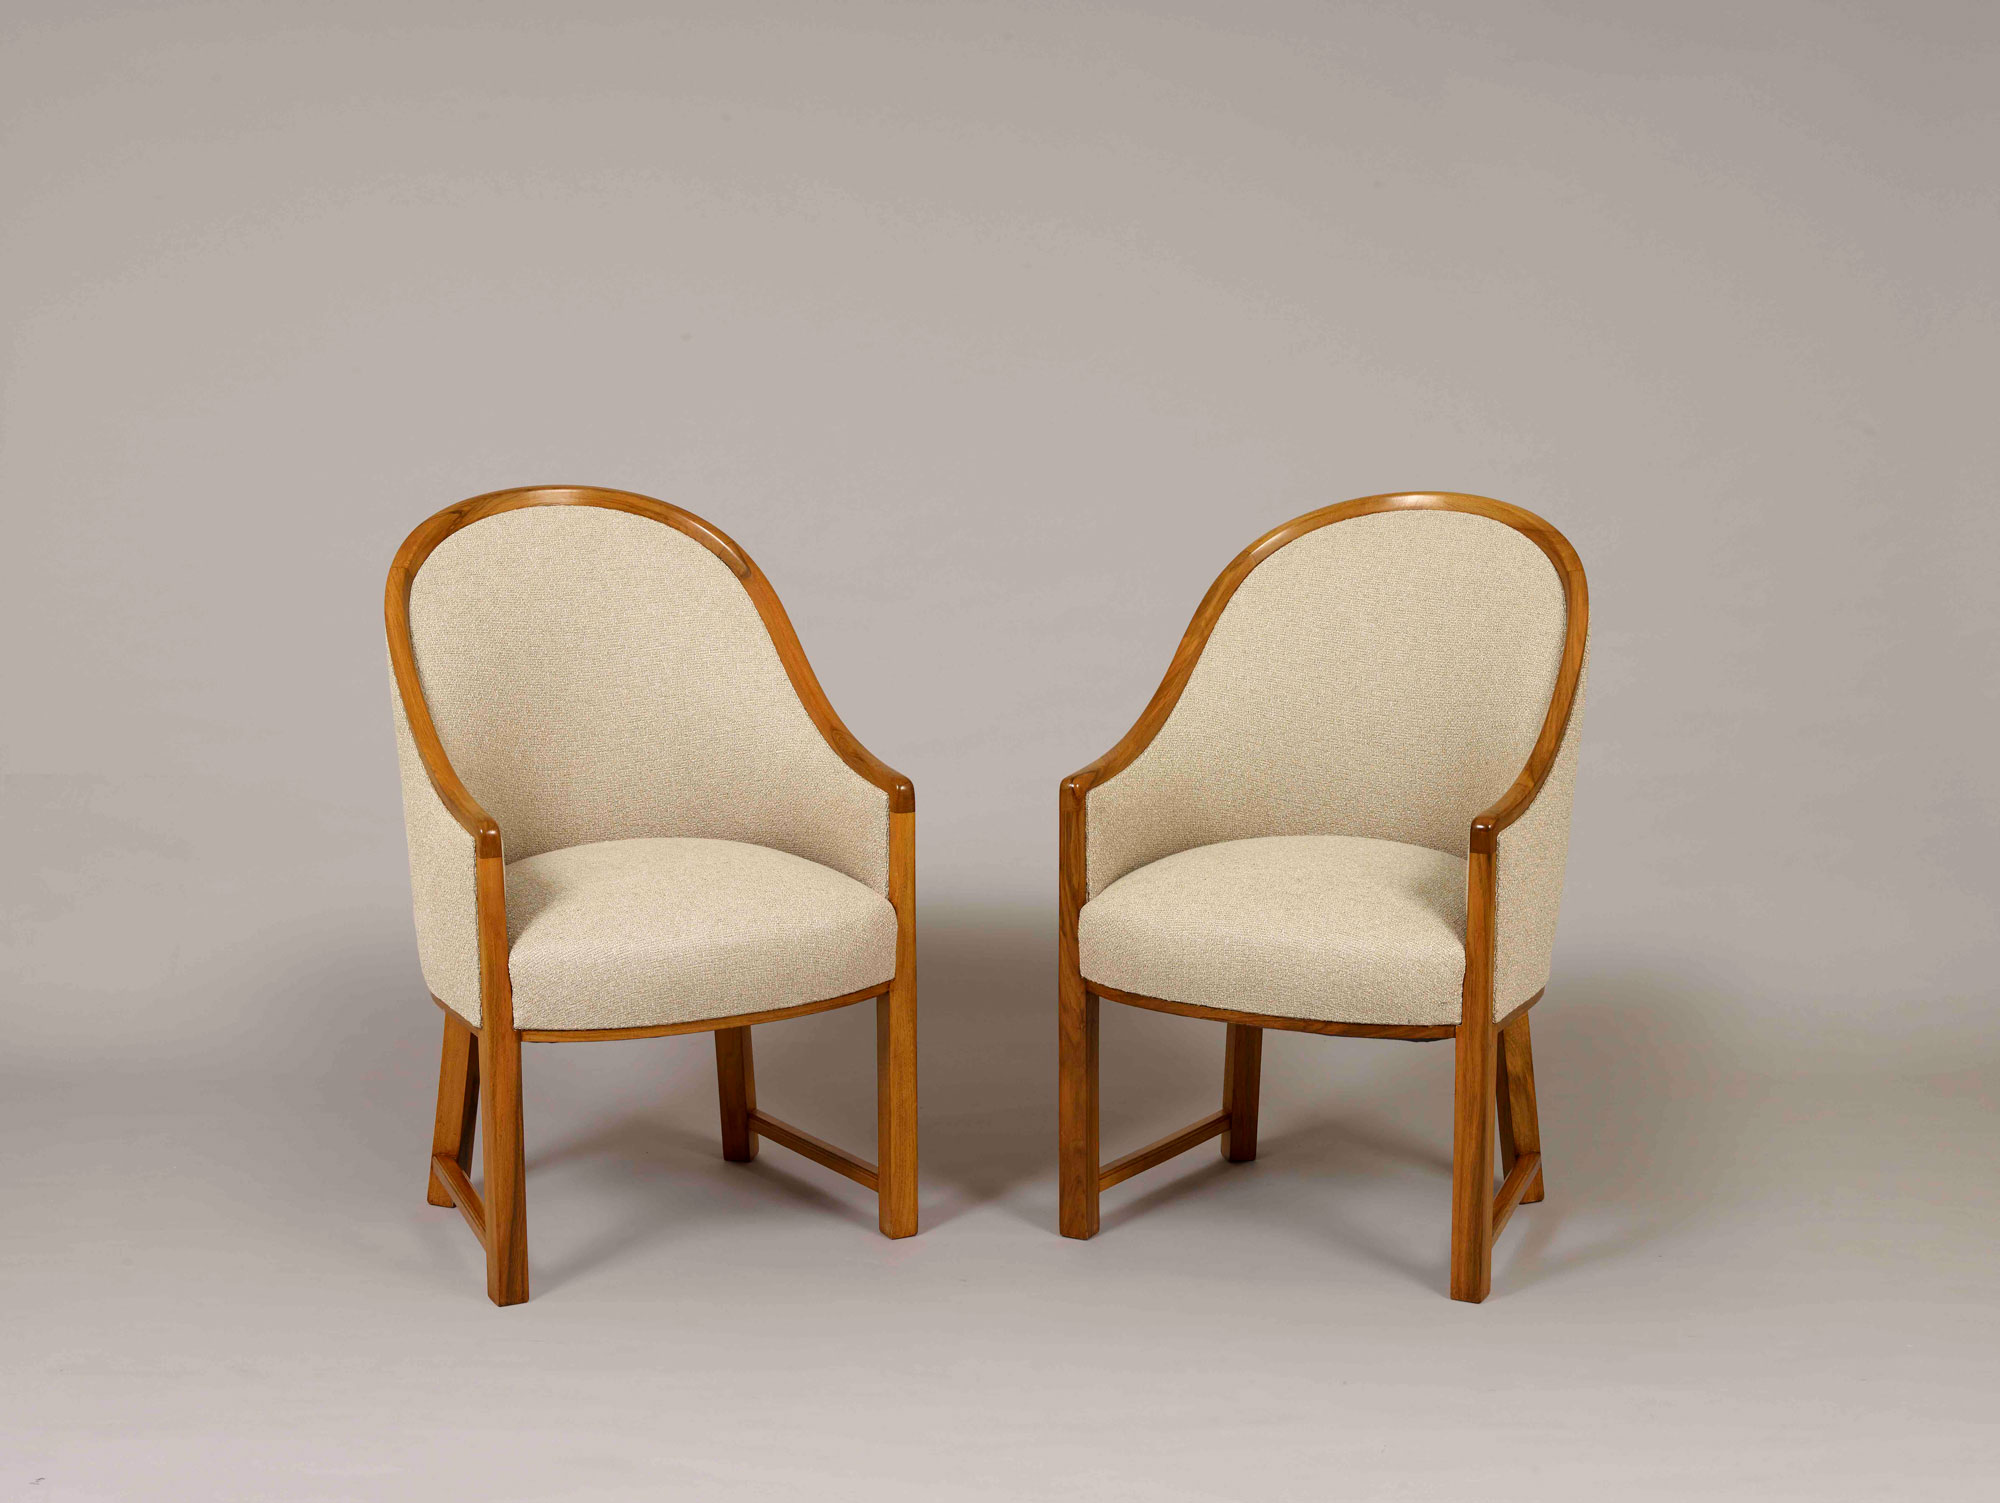 Pierre Chareau - Paire de fauteuils Modèle MF11, vers 1922